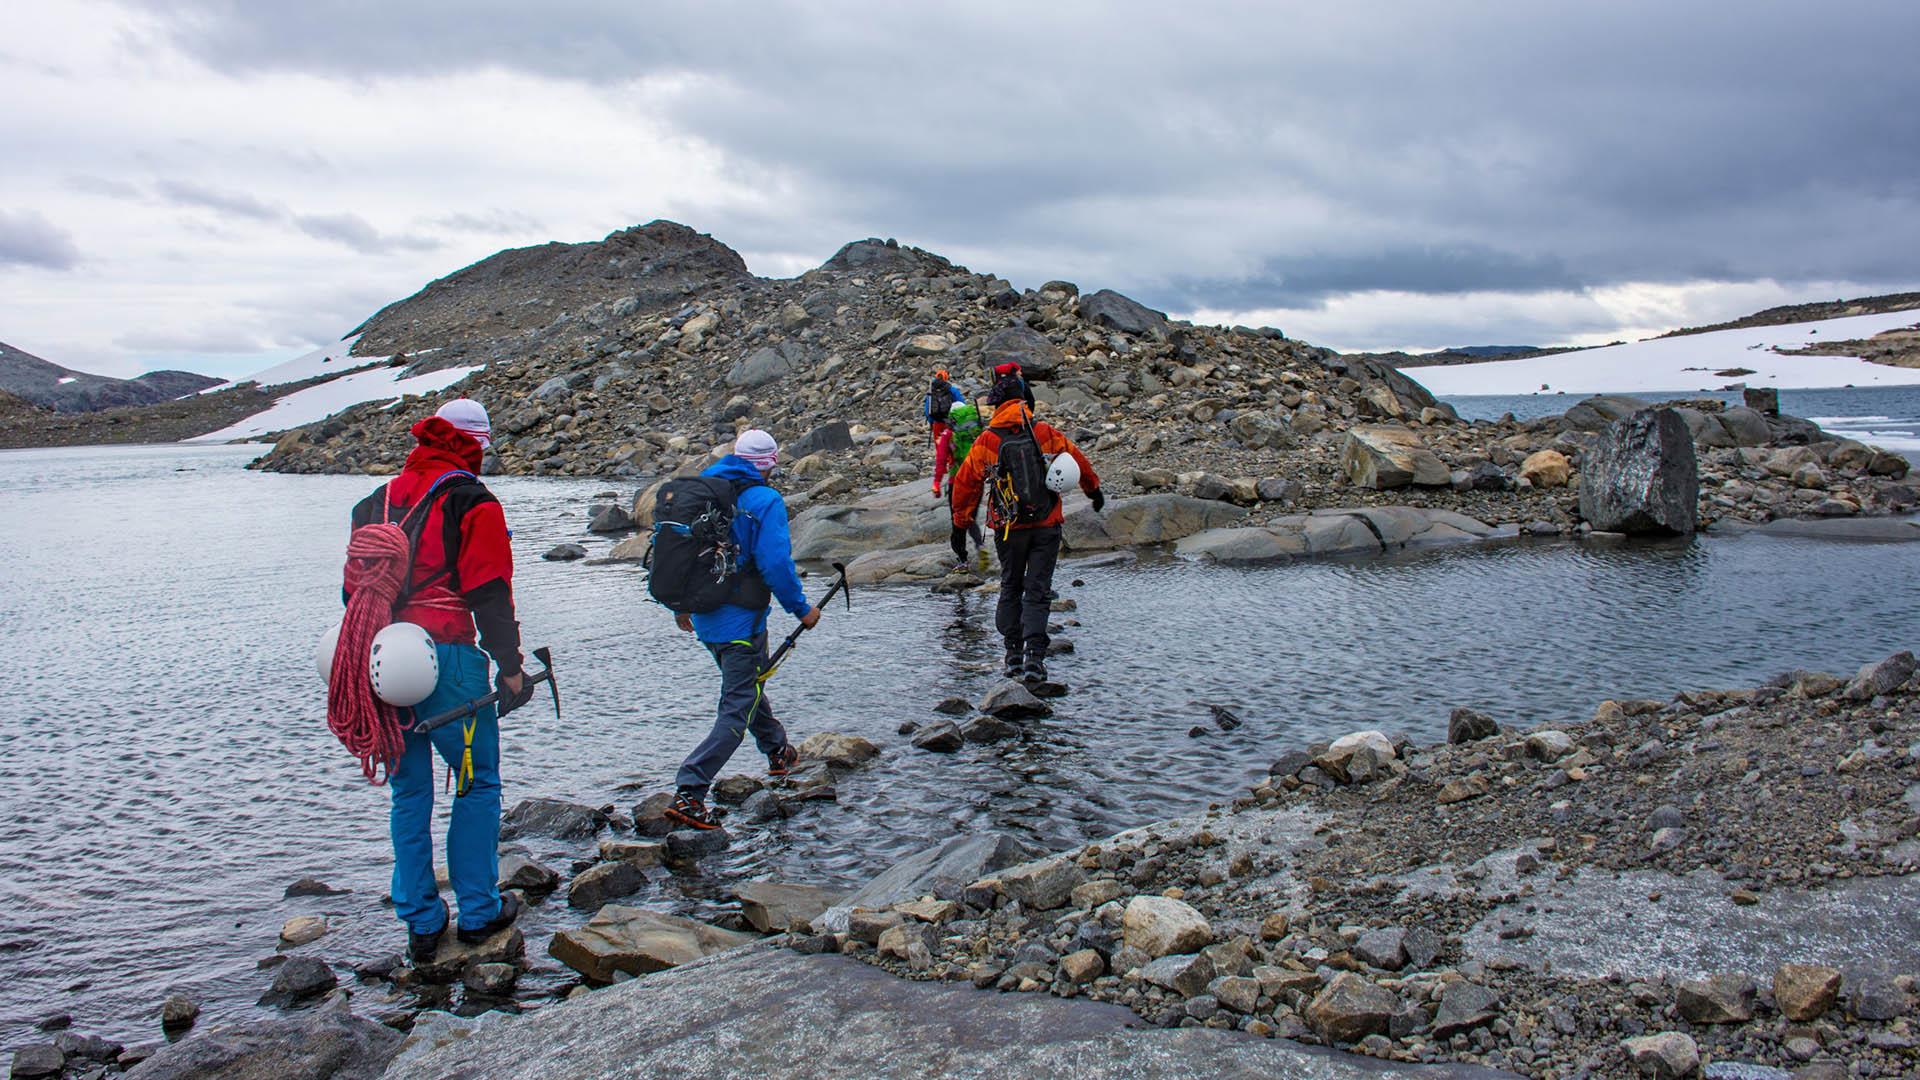 Fjellvandrere med sekk, hjelmer og isøkser krysser på steiner over et elveos i goldt høyfjellslandskap.